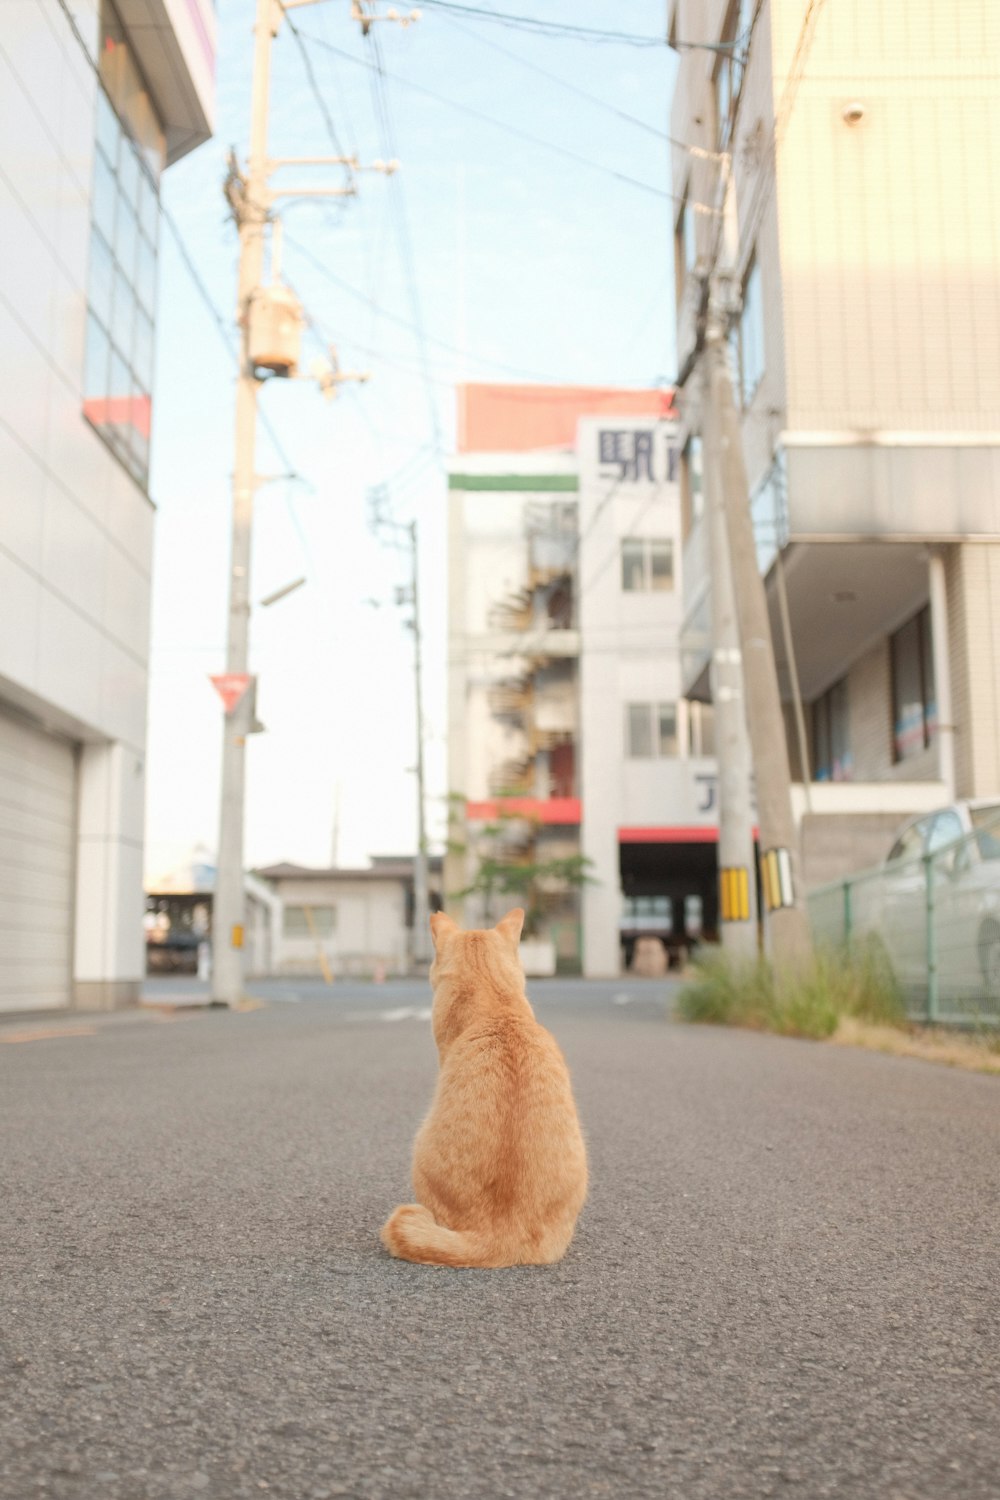 gato atigrado naranja en carretera asfaltada gris durante el día